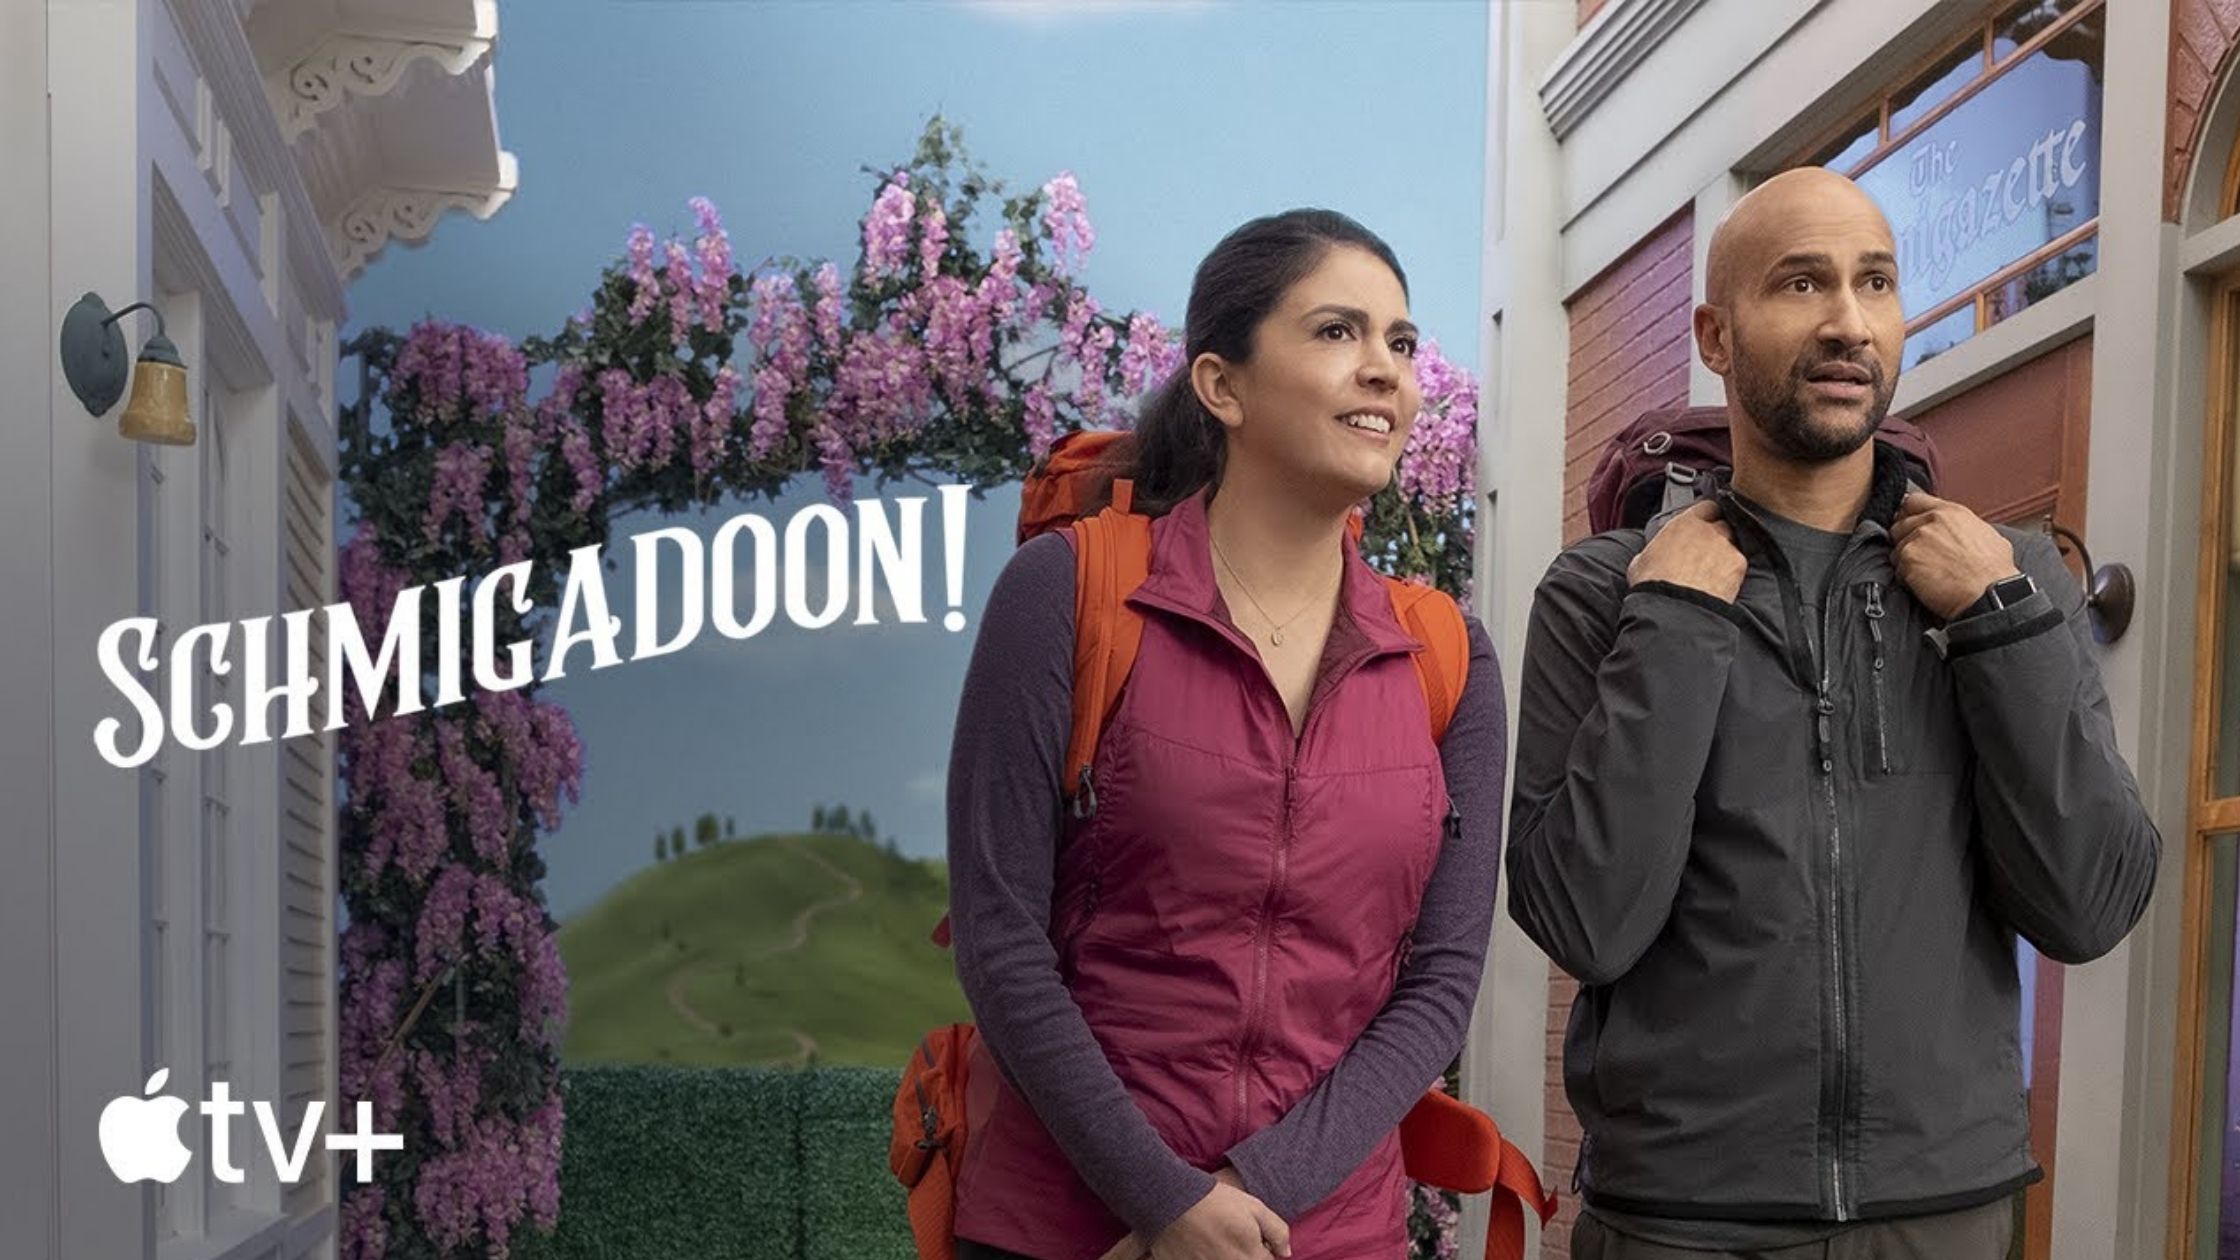 WATCH: 'Schmigadoon' TV Musical Trailer is Out